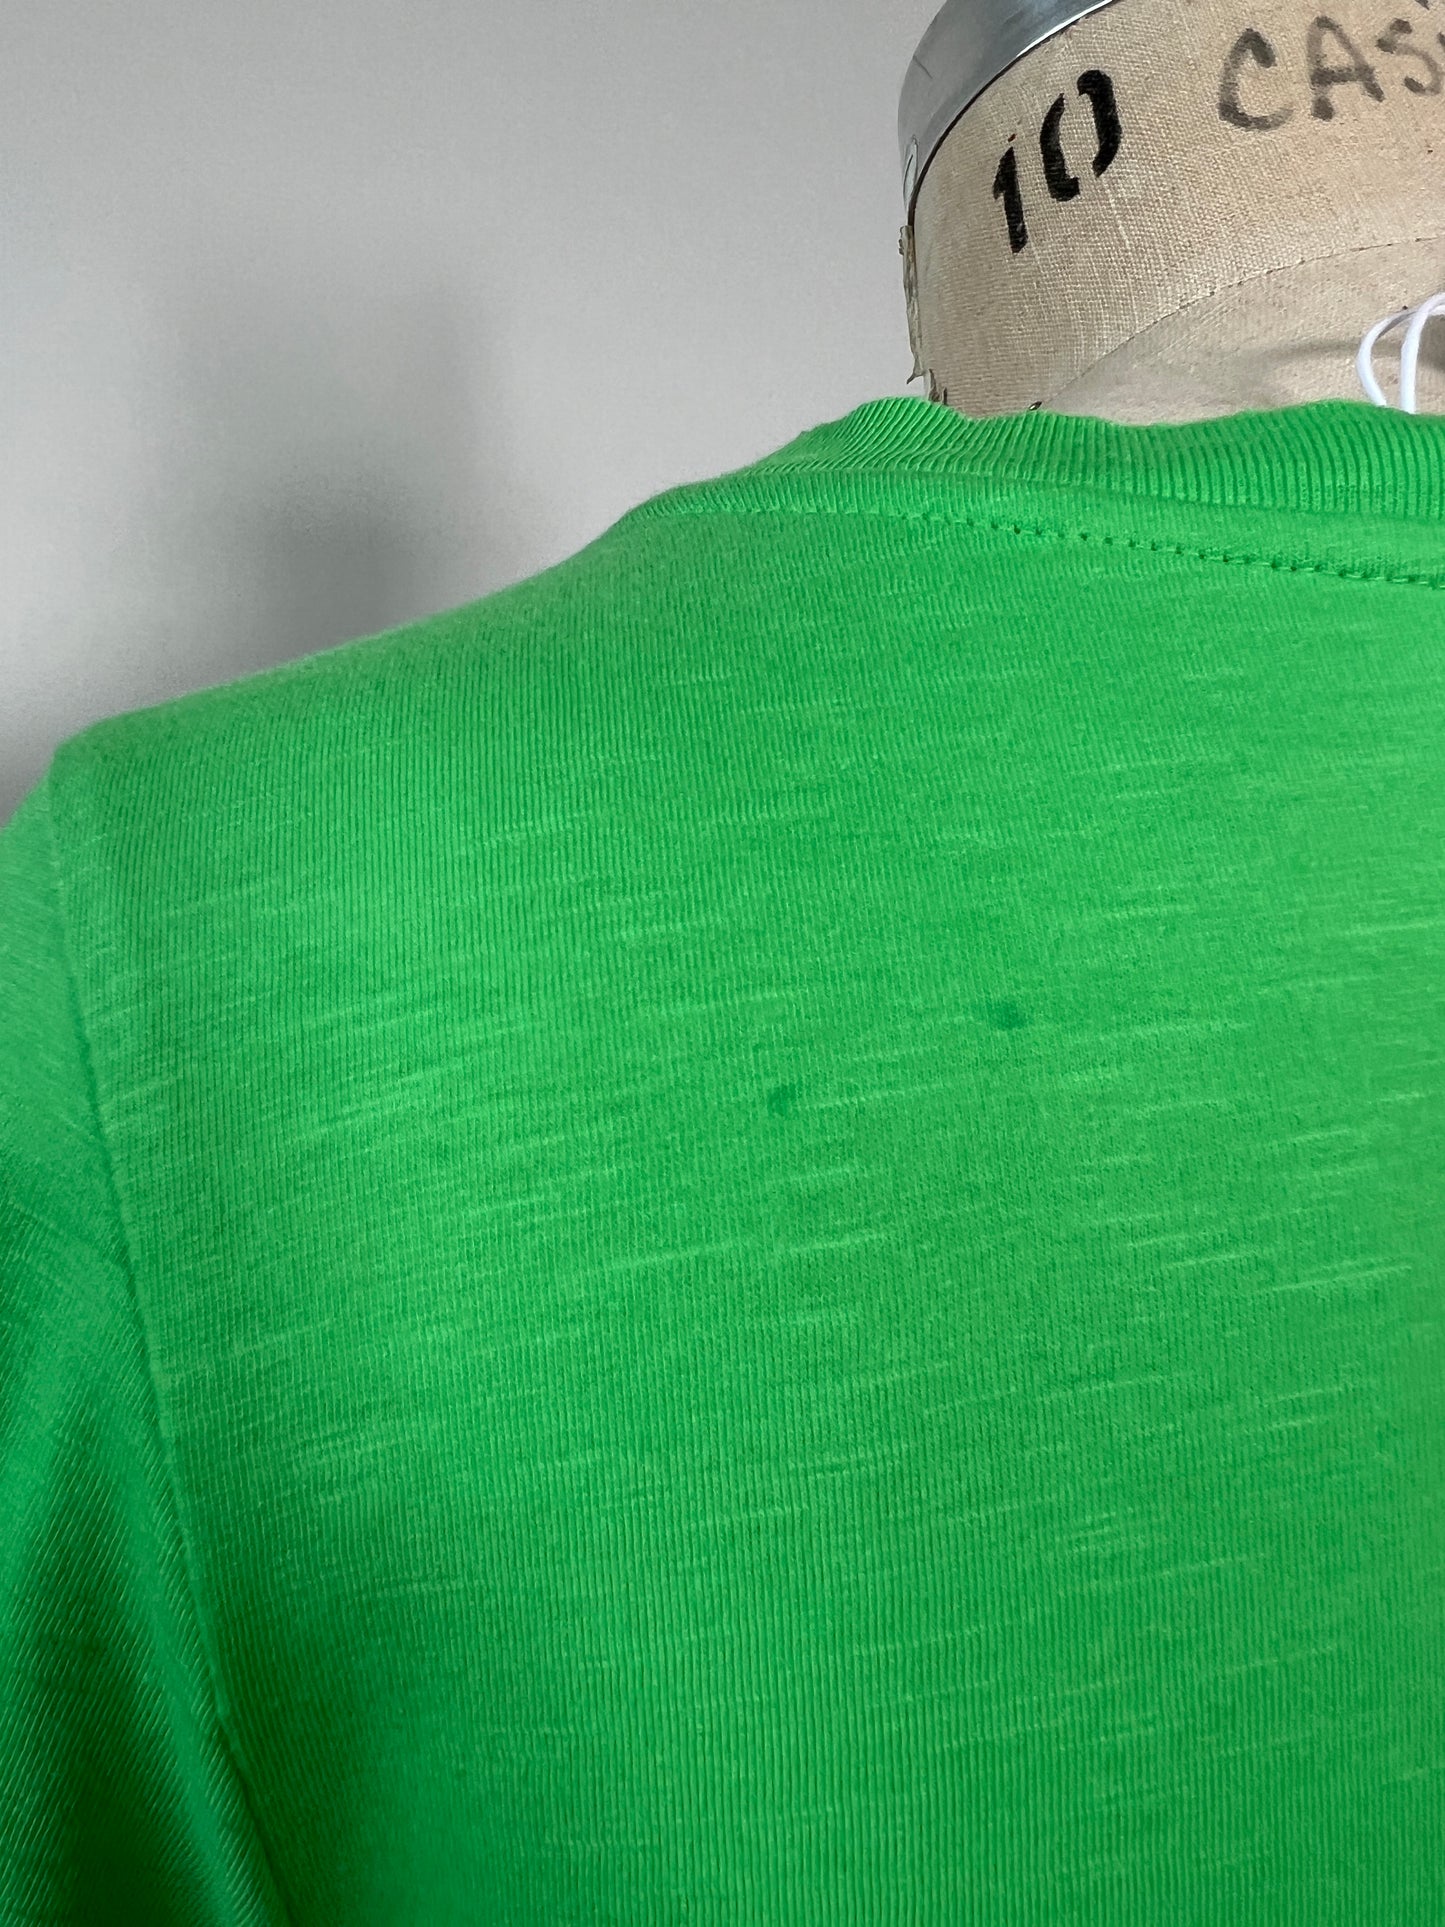 T-shirt vert à logotype Coster (S)